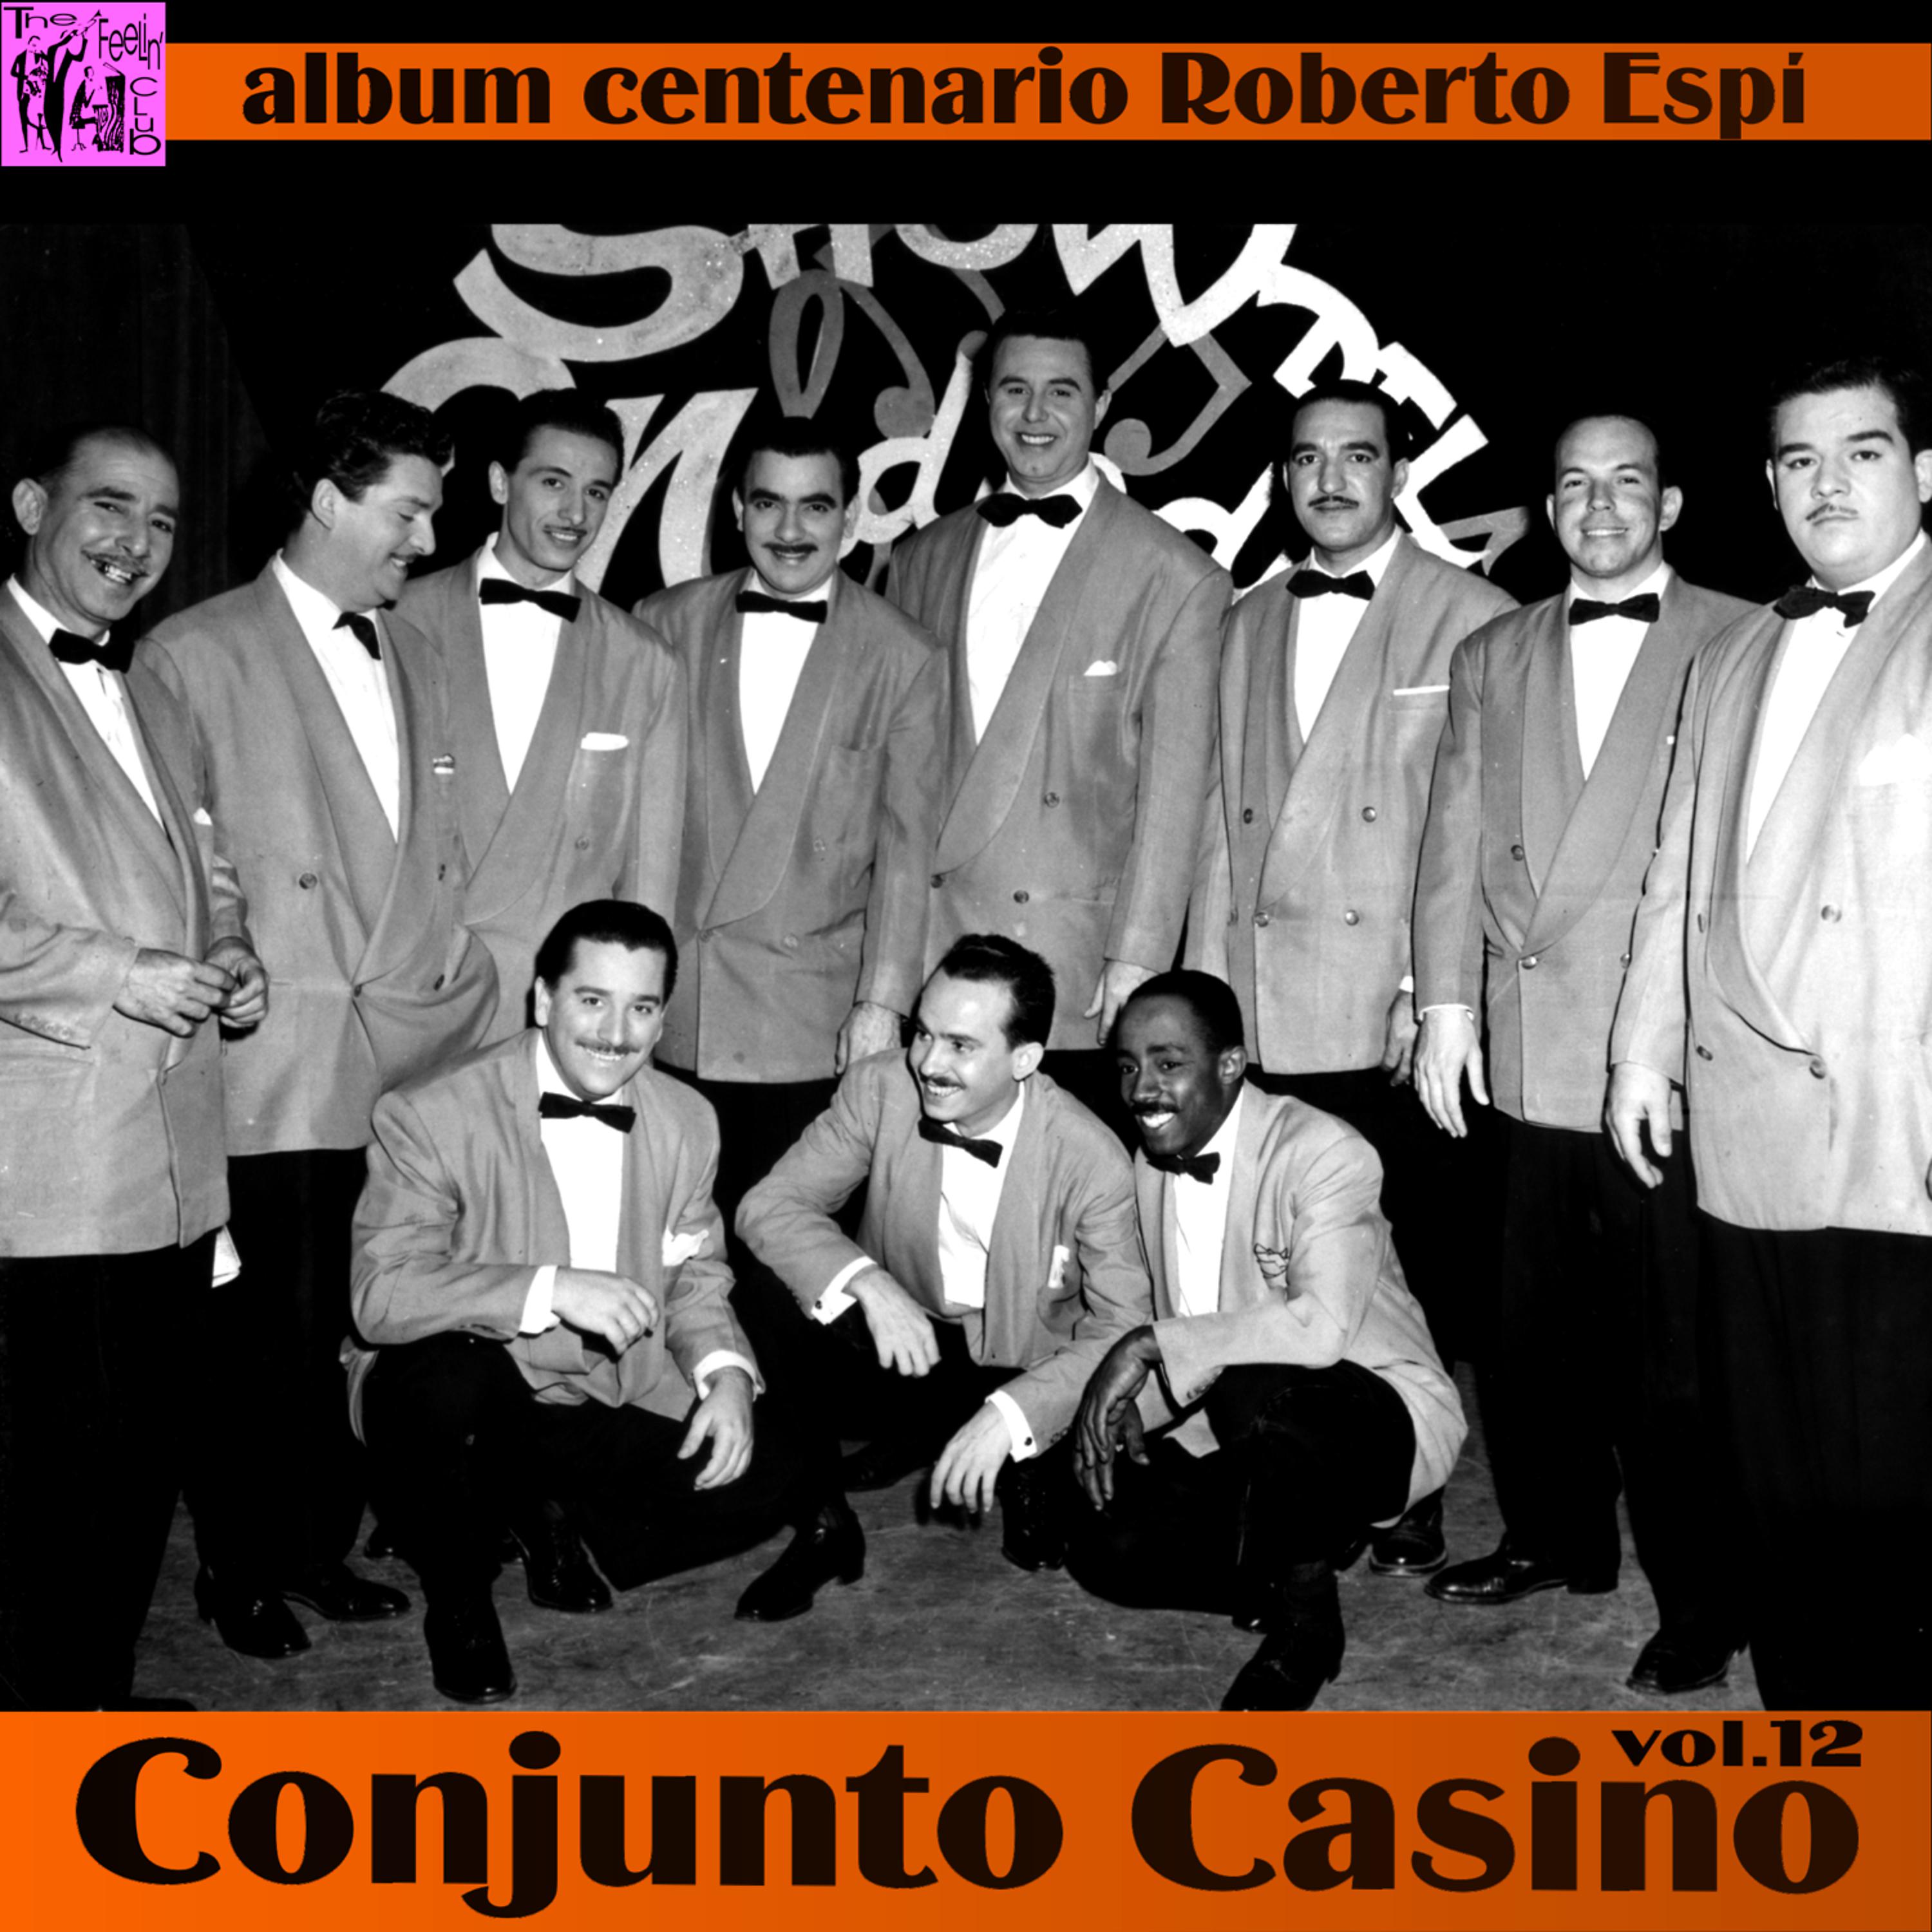 Постер альбома Centenario Roberto Espí: Conjunto Casino, Vol.12